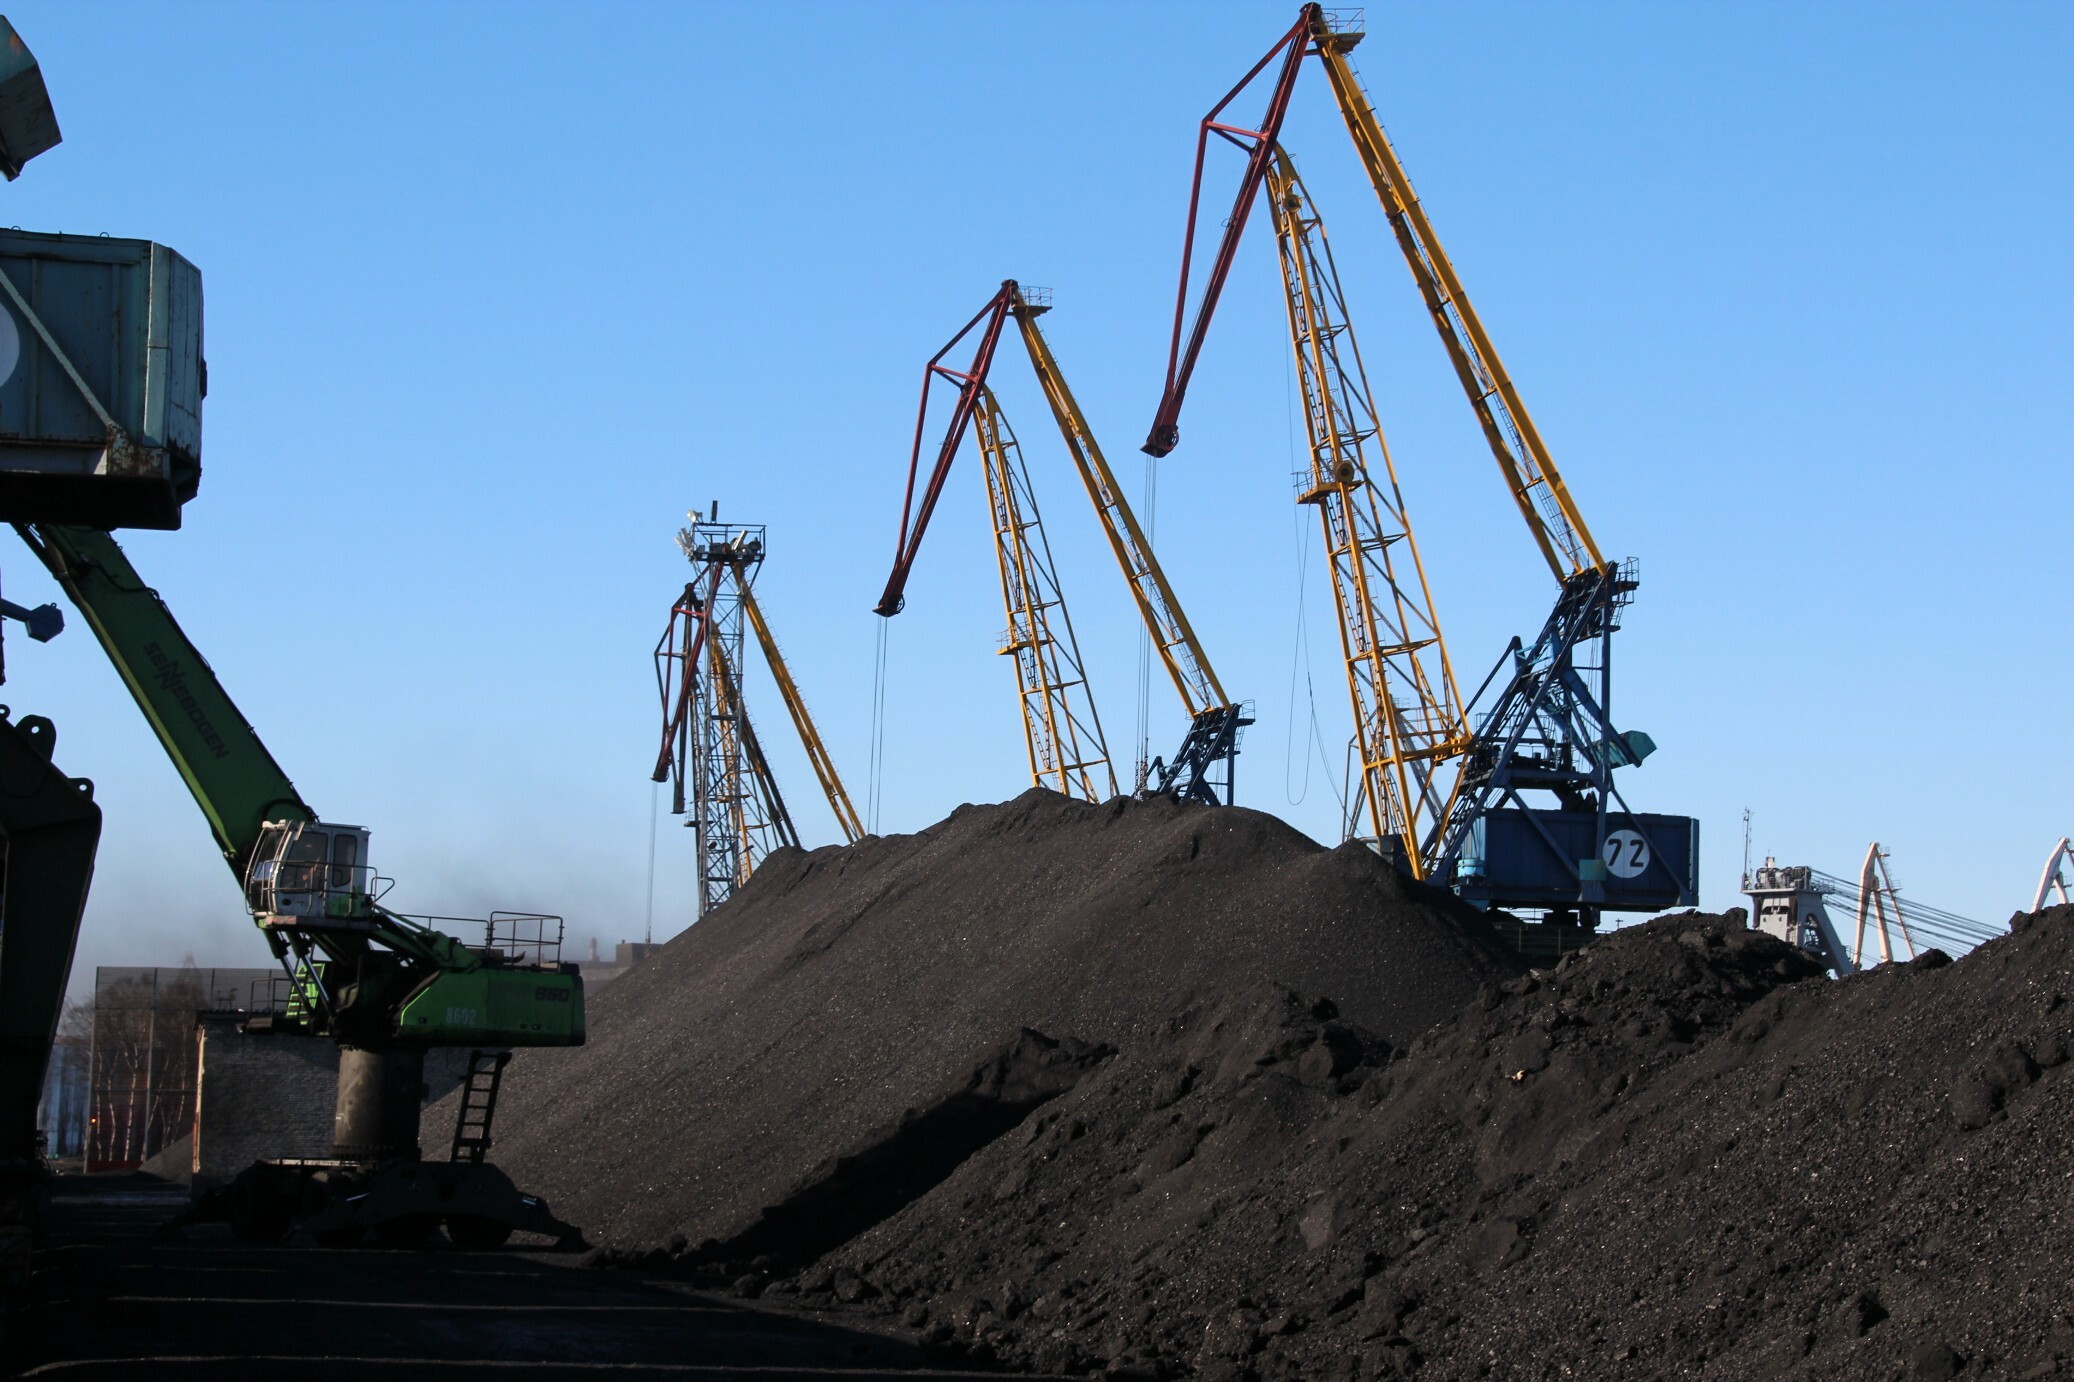 Жители Хакасии жалуются на работу угольных компаний, а губернатор проблему игнорирует